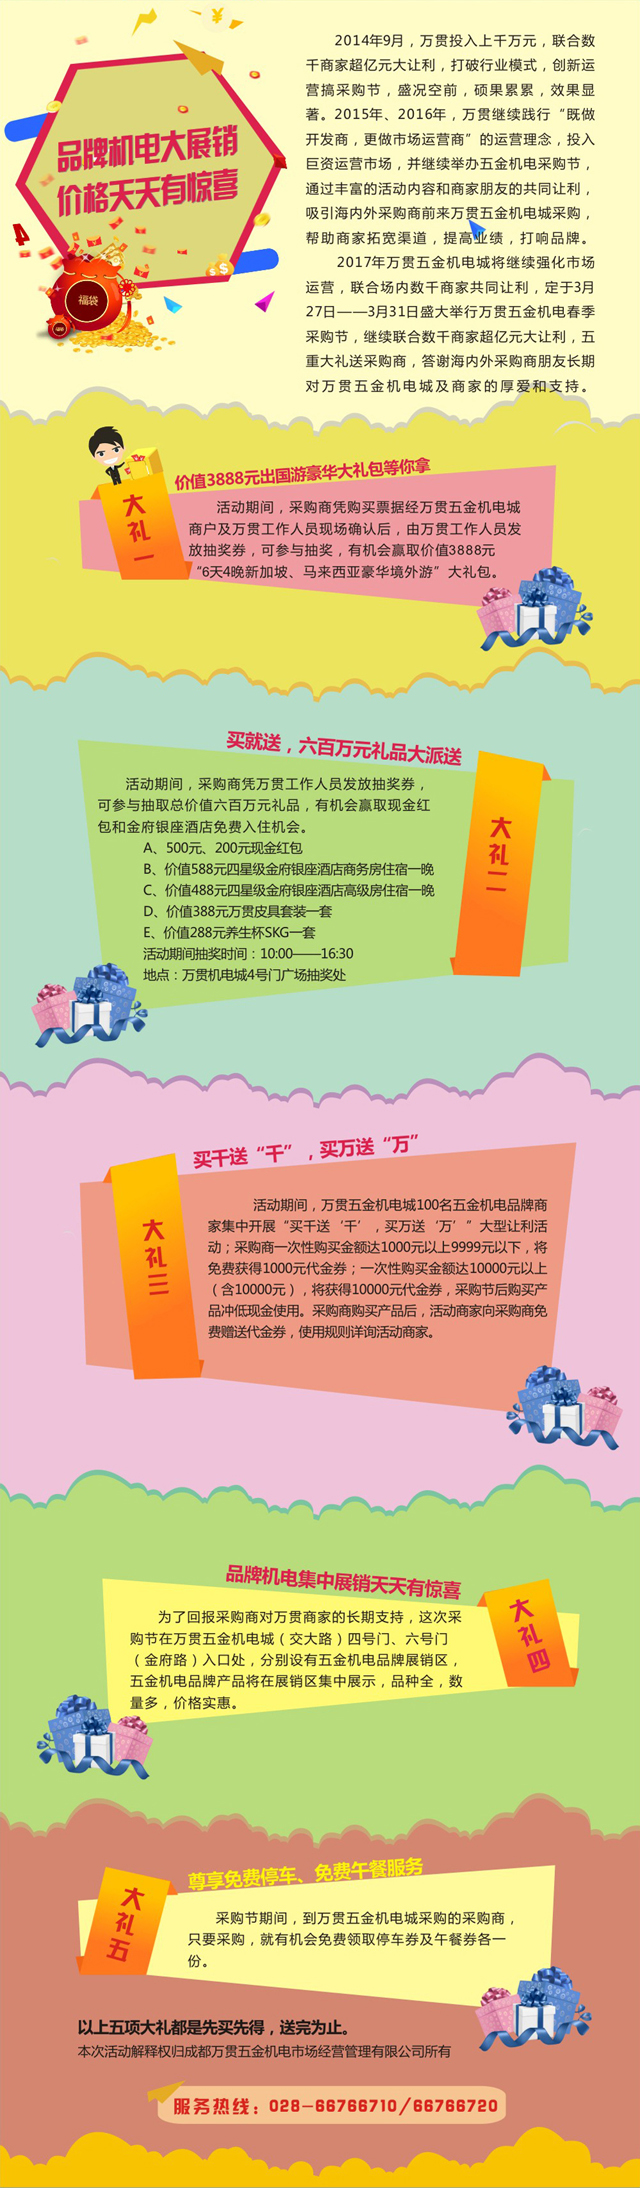 2017冠军体育(中国)责任有限公司官网五金机电春季采购节将于3月27日-31日举行(图2)